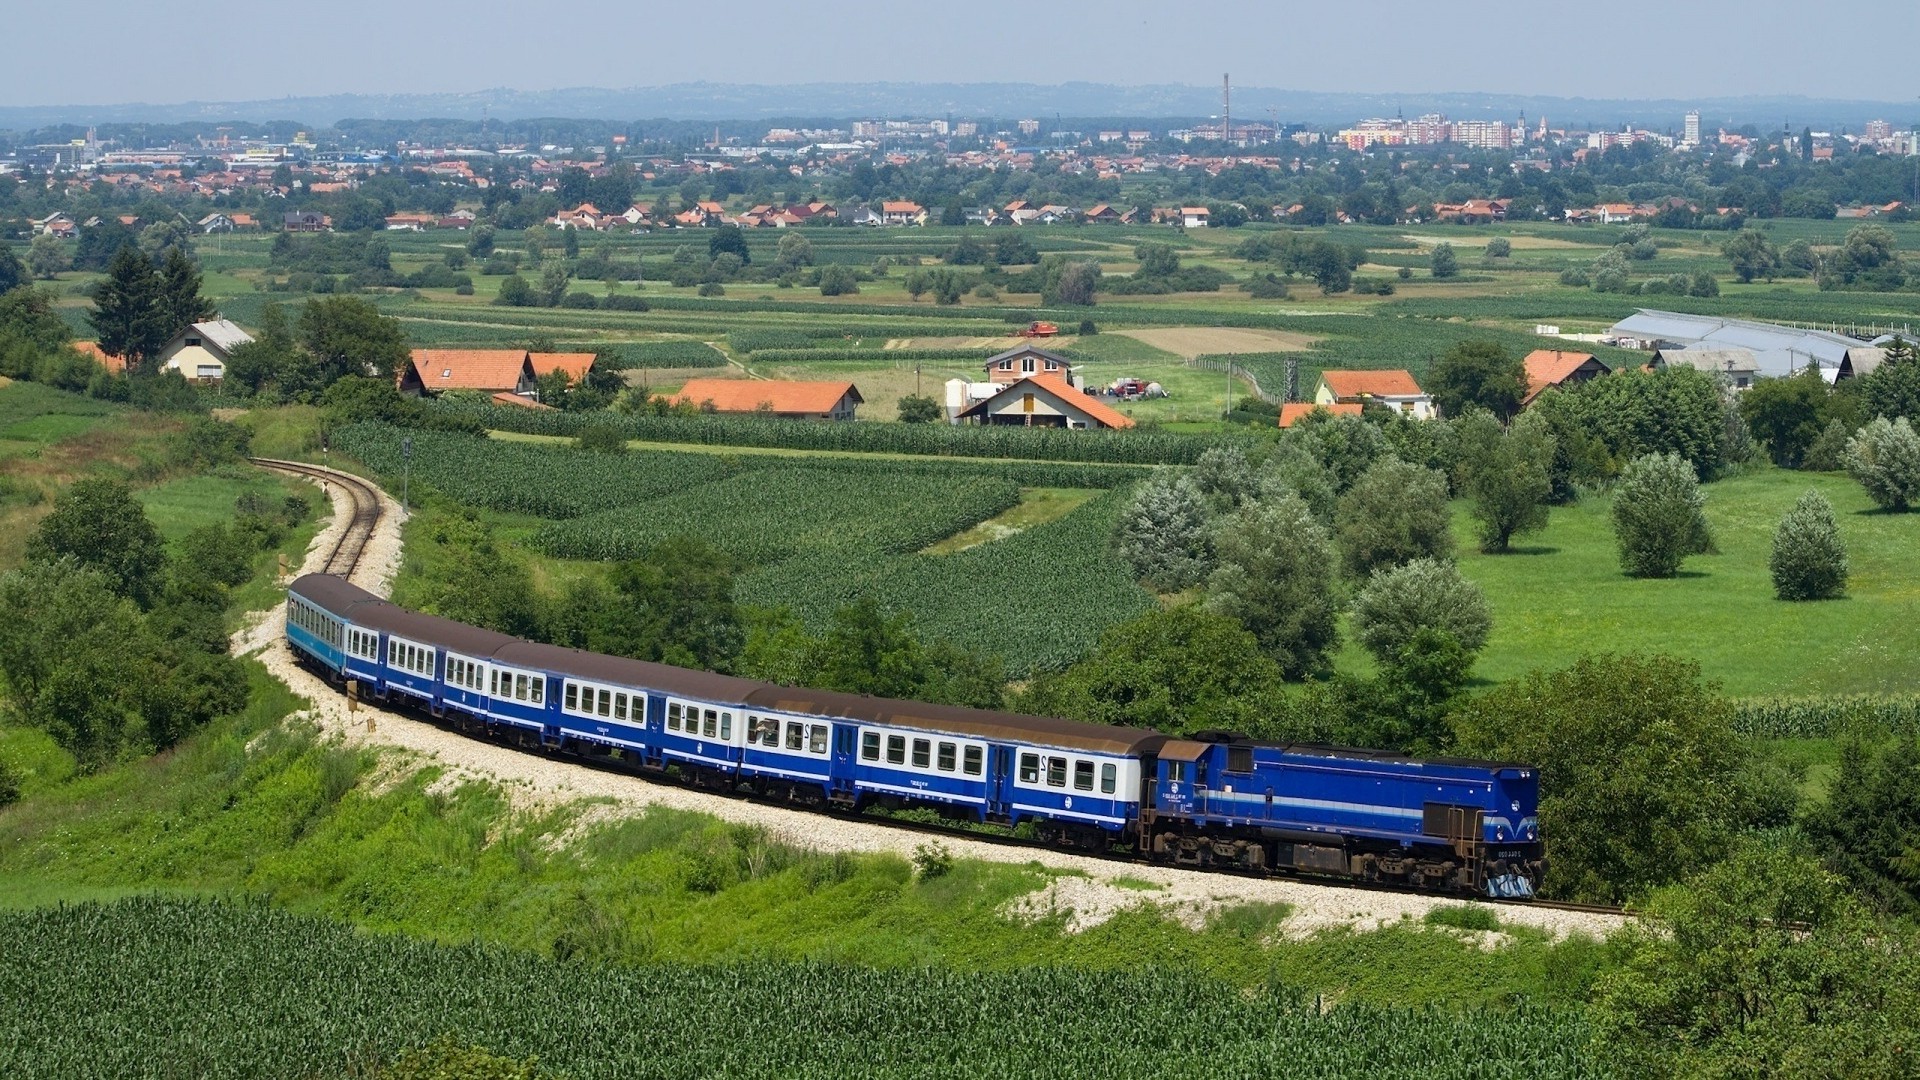 1920x1080 wallpapers: treno, struttura, azzurro, campi, estate, ferrovia, città, periferia, distanza, dall’alto (image)